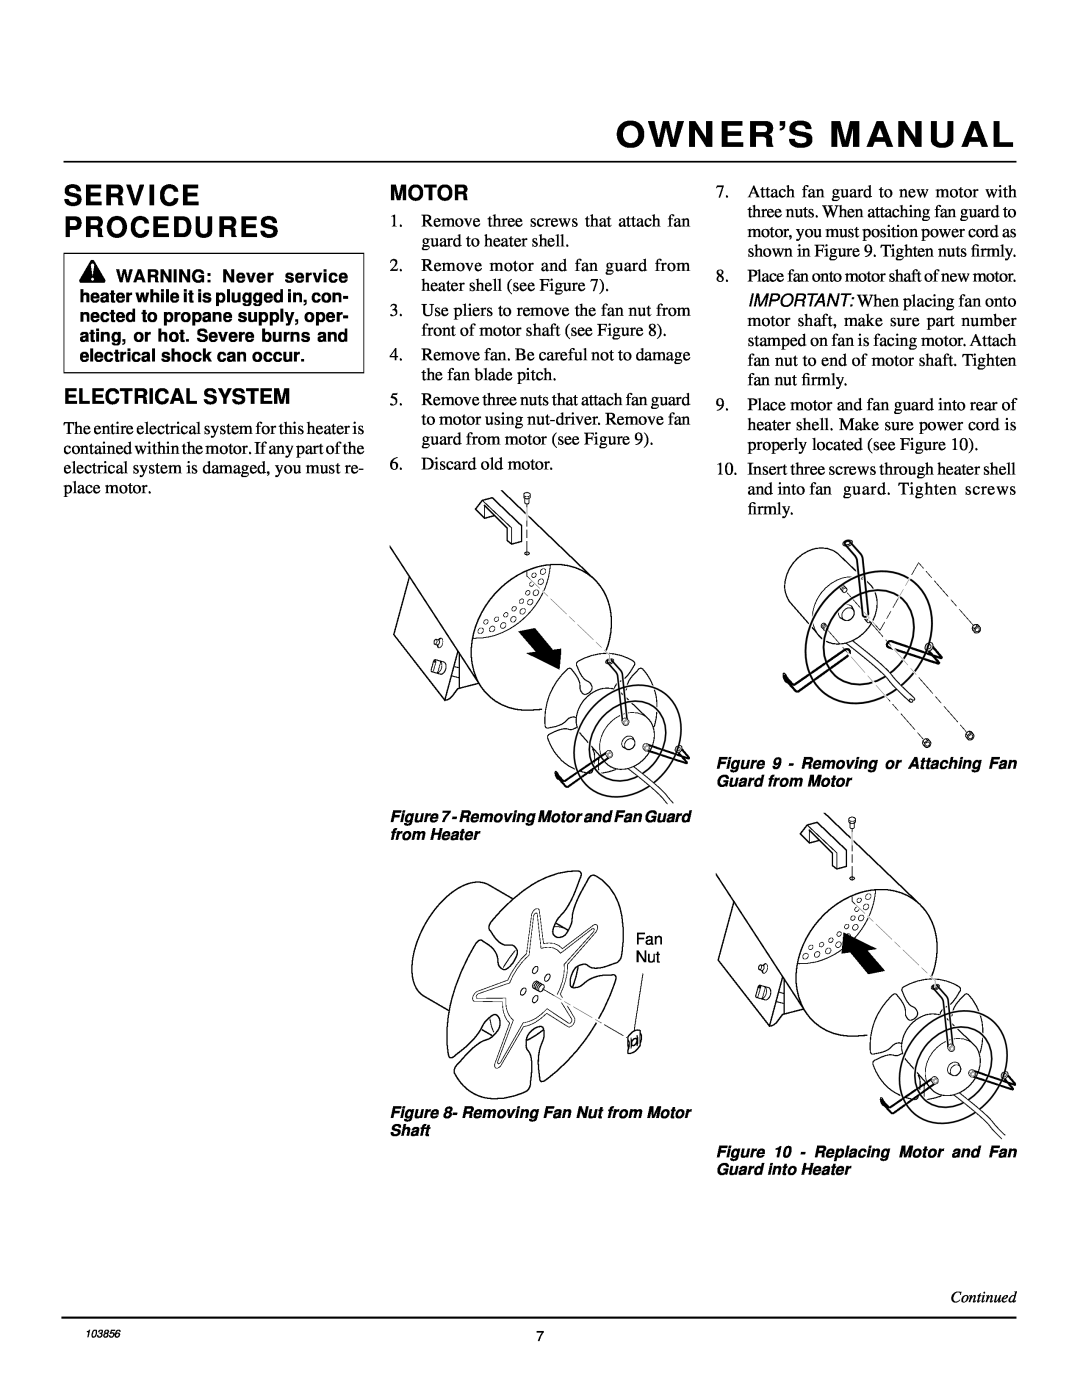 Desa RCLP50V owner manual Service Procedures, Electrical System, Motor 